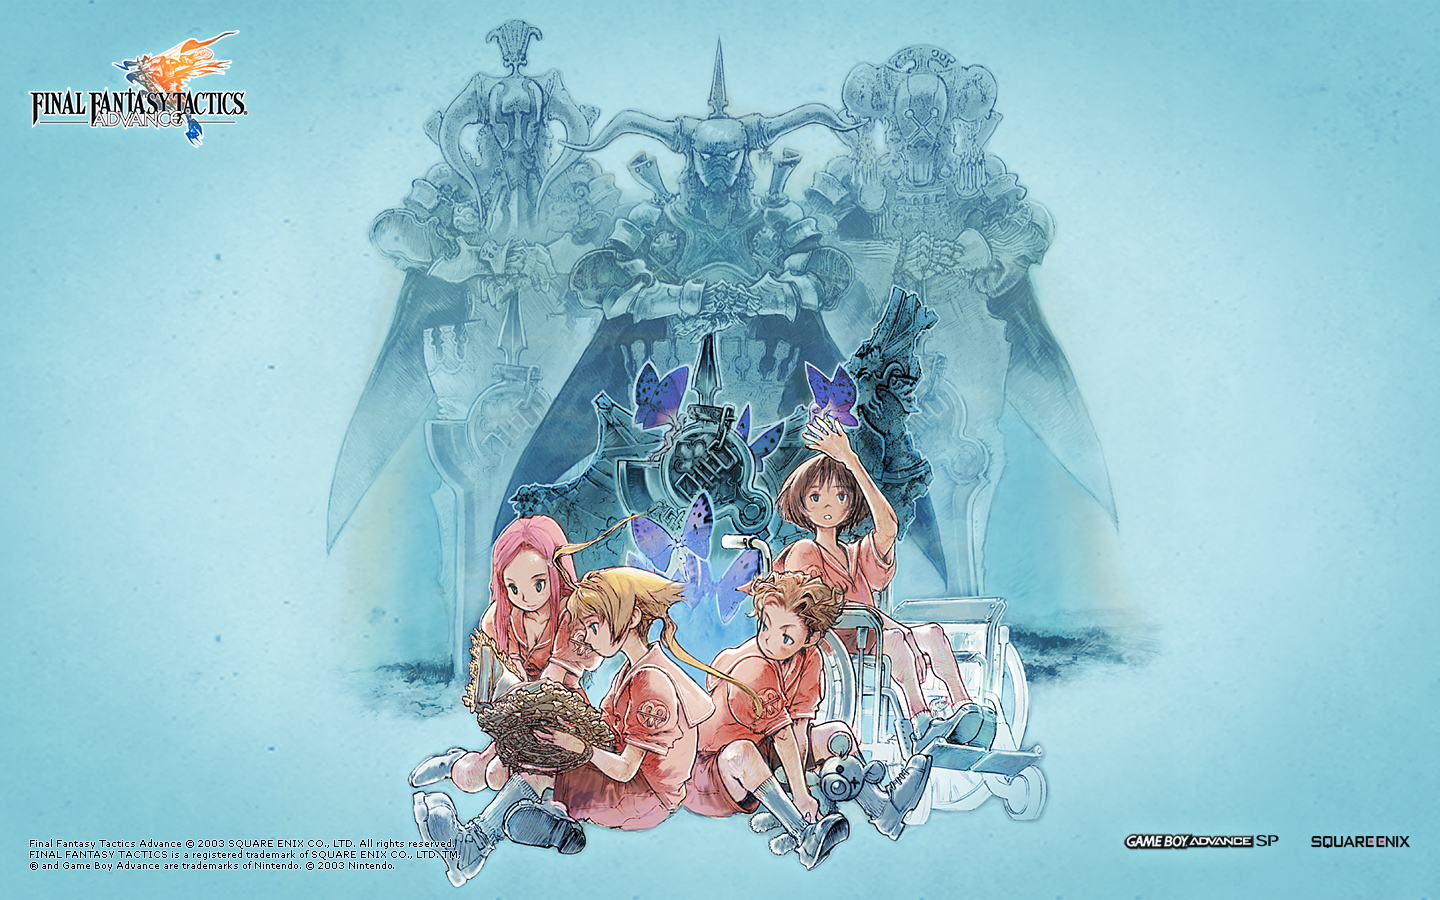 Final Fantasy Tactics Wallpapers